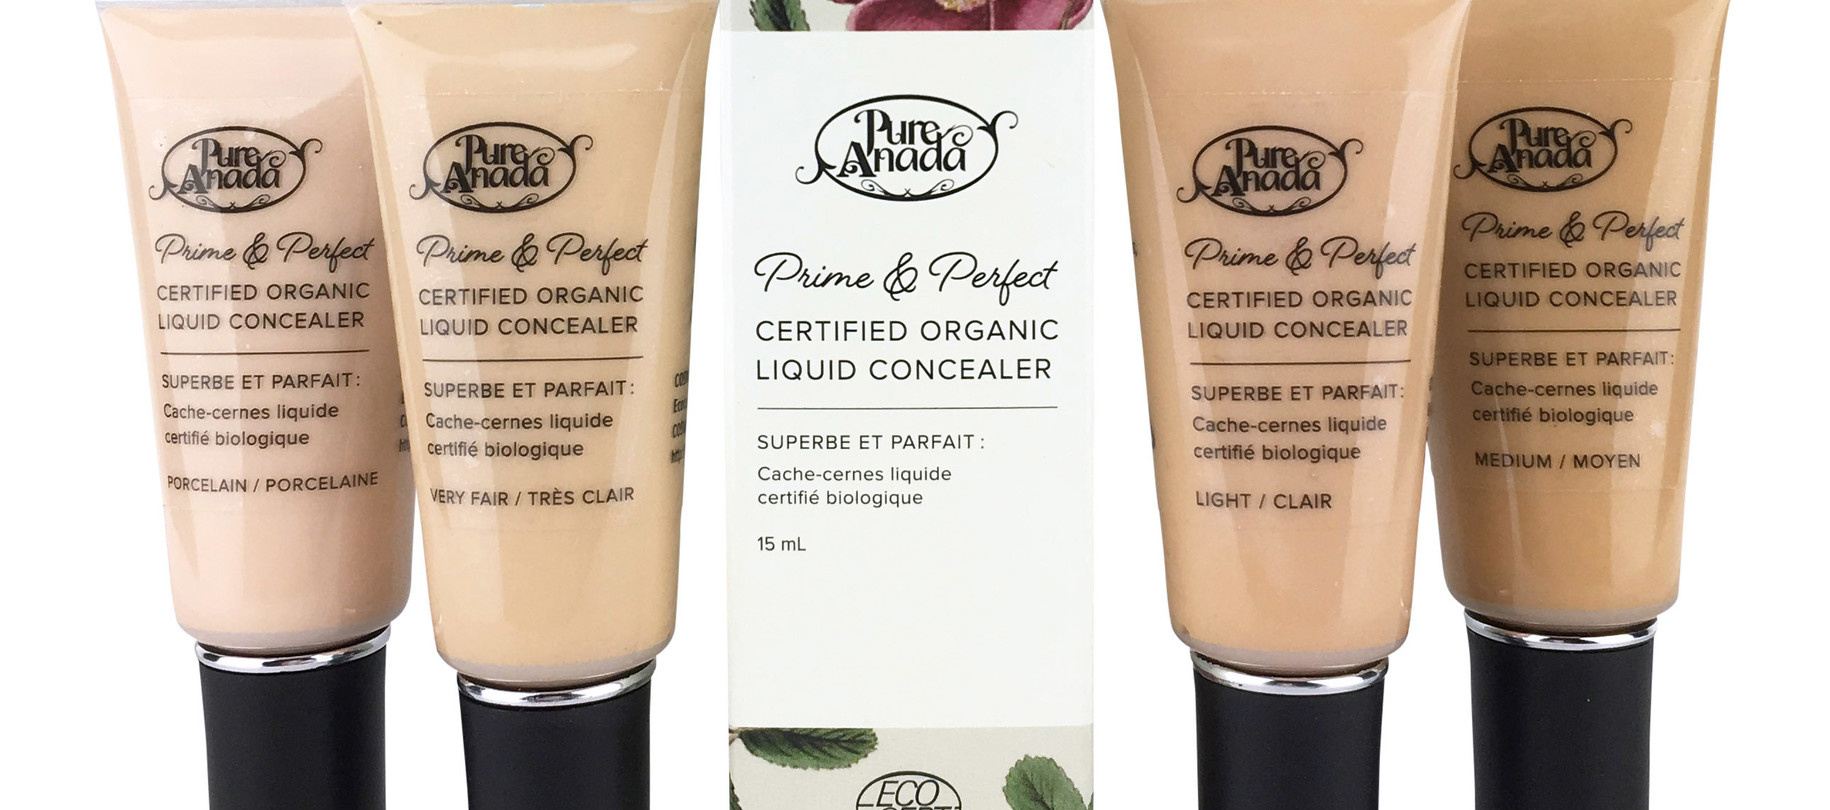 Pure Anada Prime & Perfect Liquid Concealer